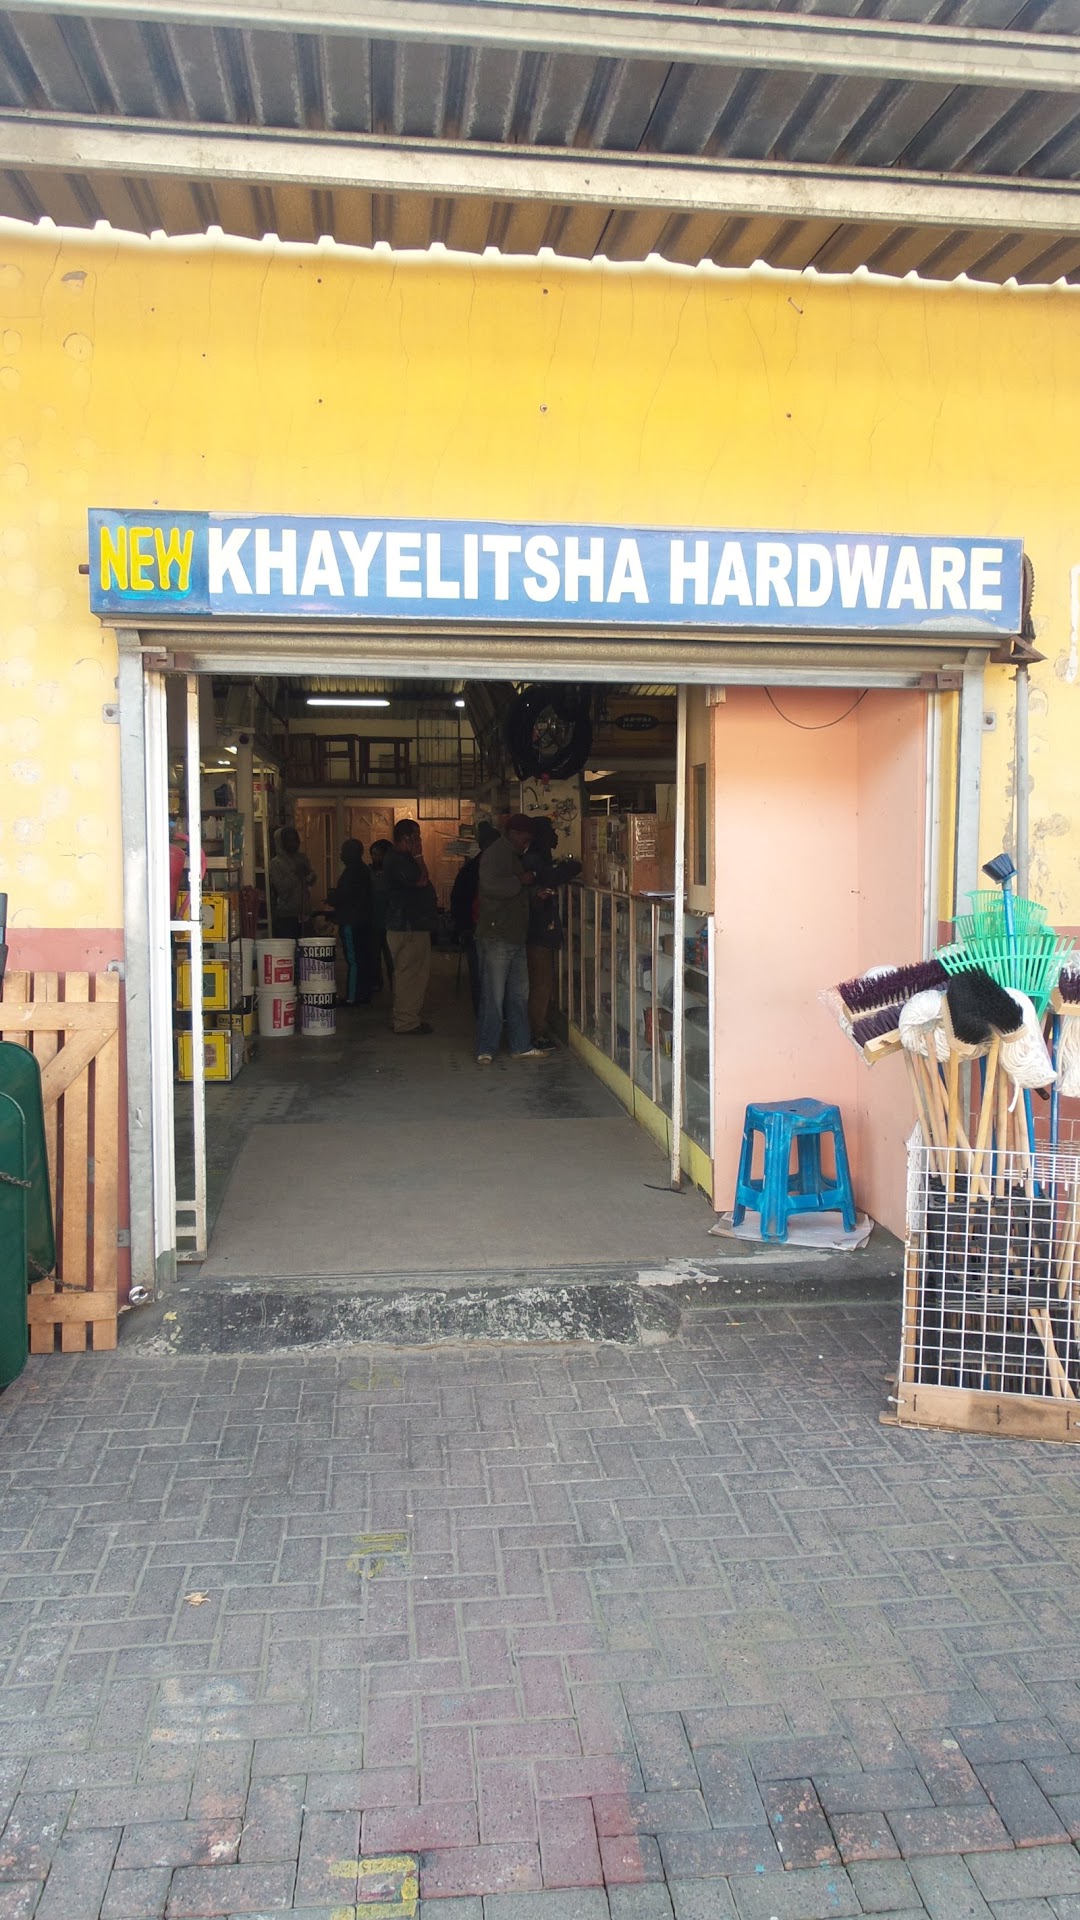 New Khayelitsha Hardware